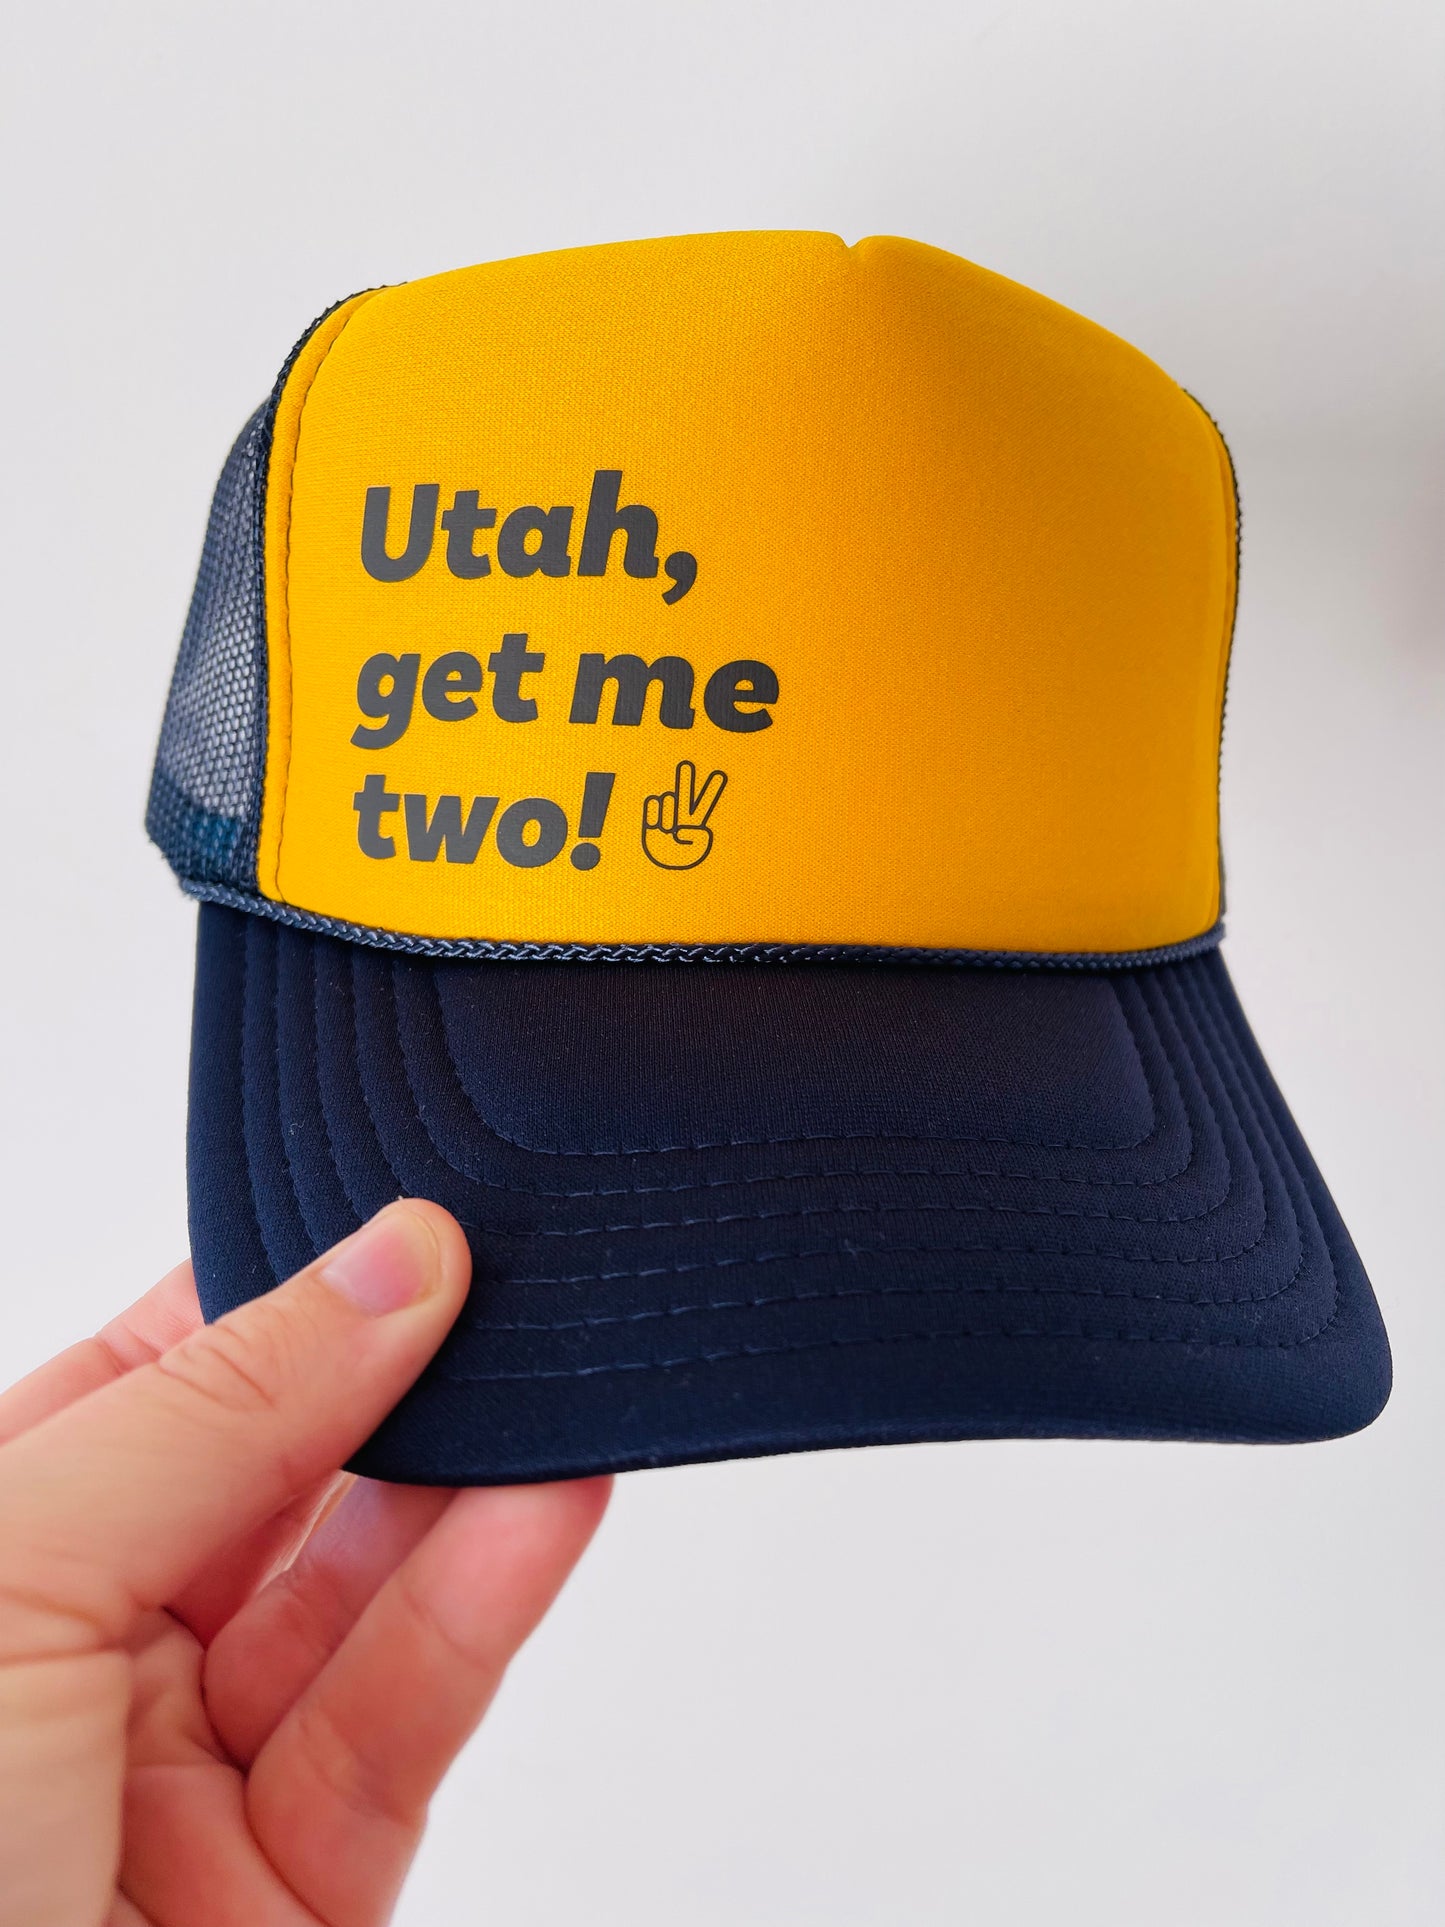 Utah, get me two! ✌🏻